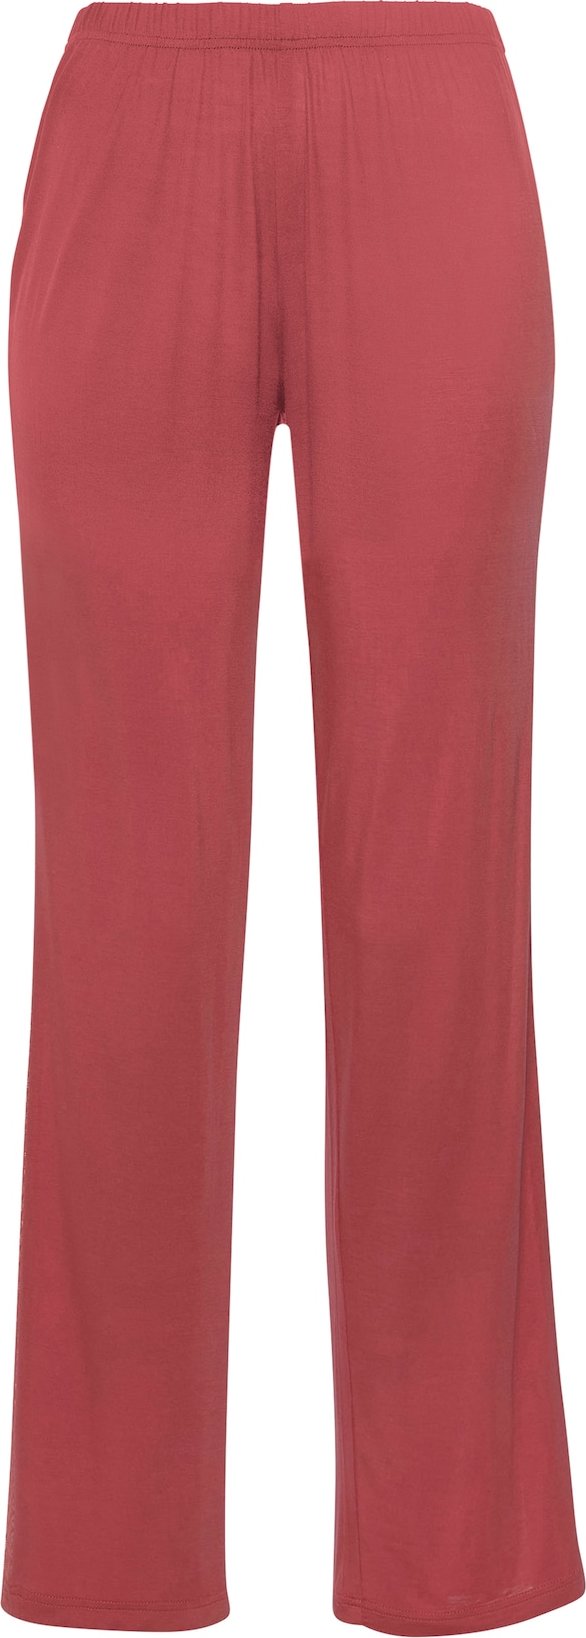 LASCANA Pyžamové kalhoty růže